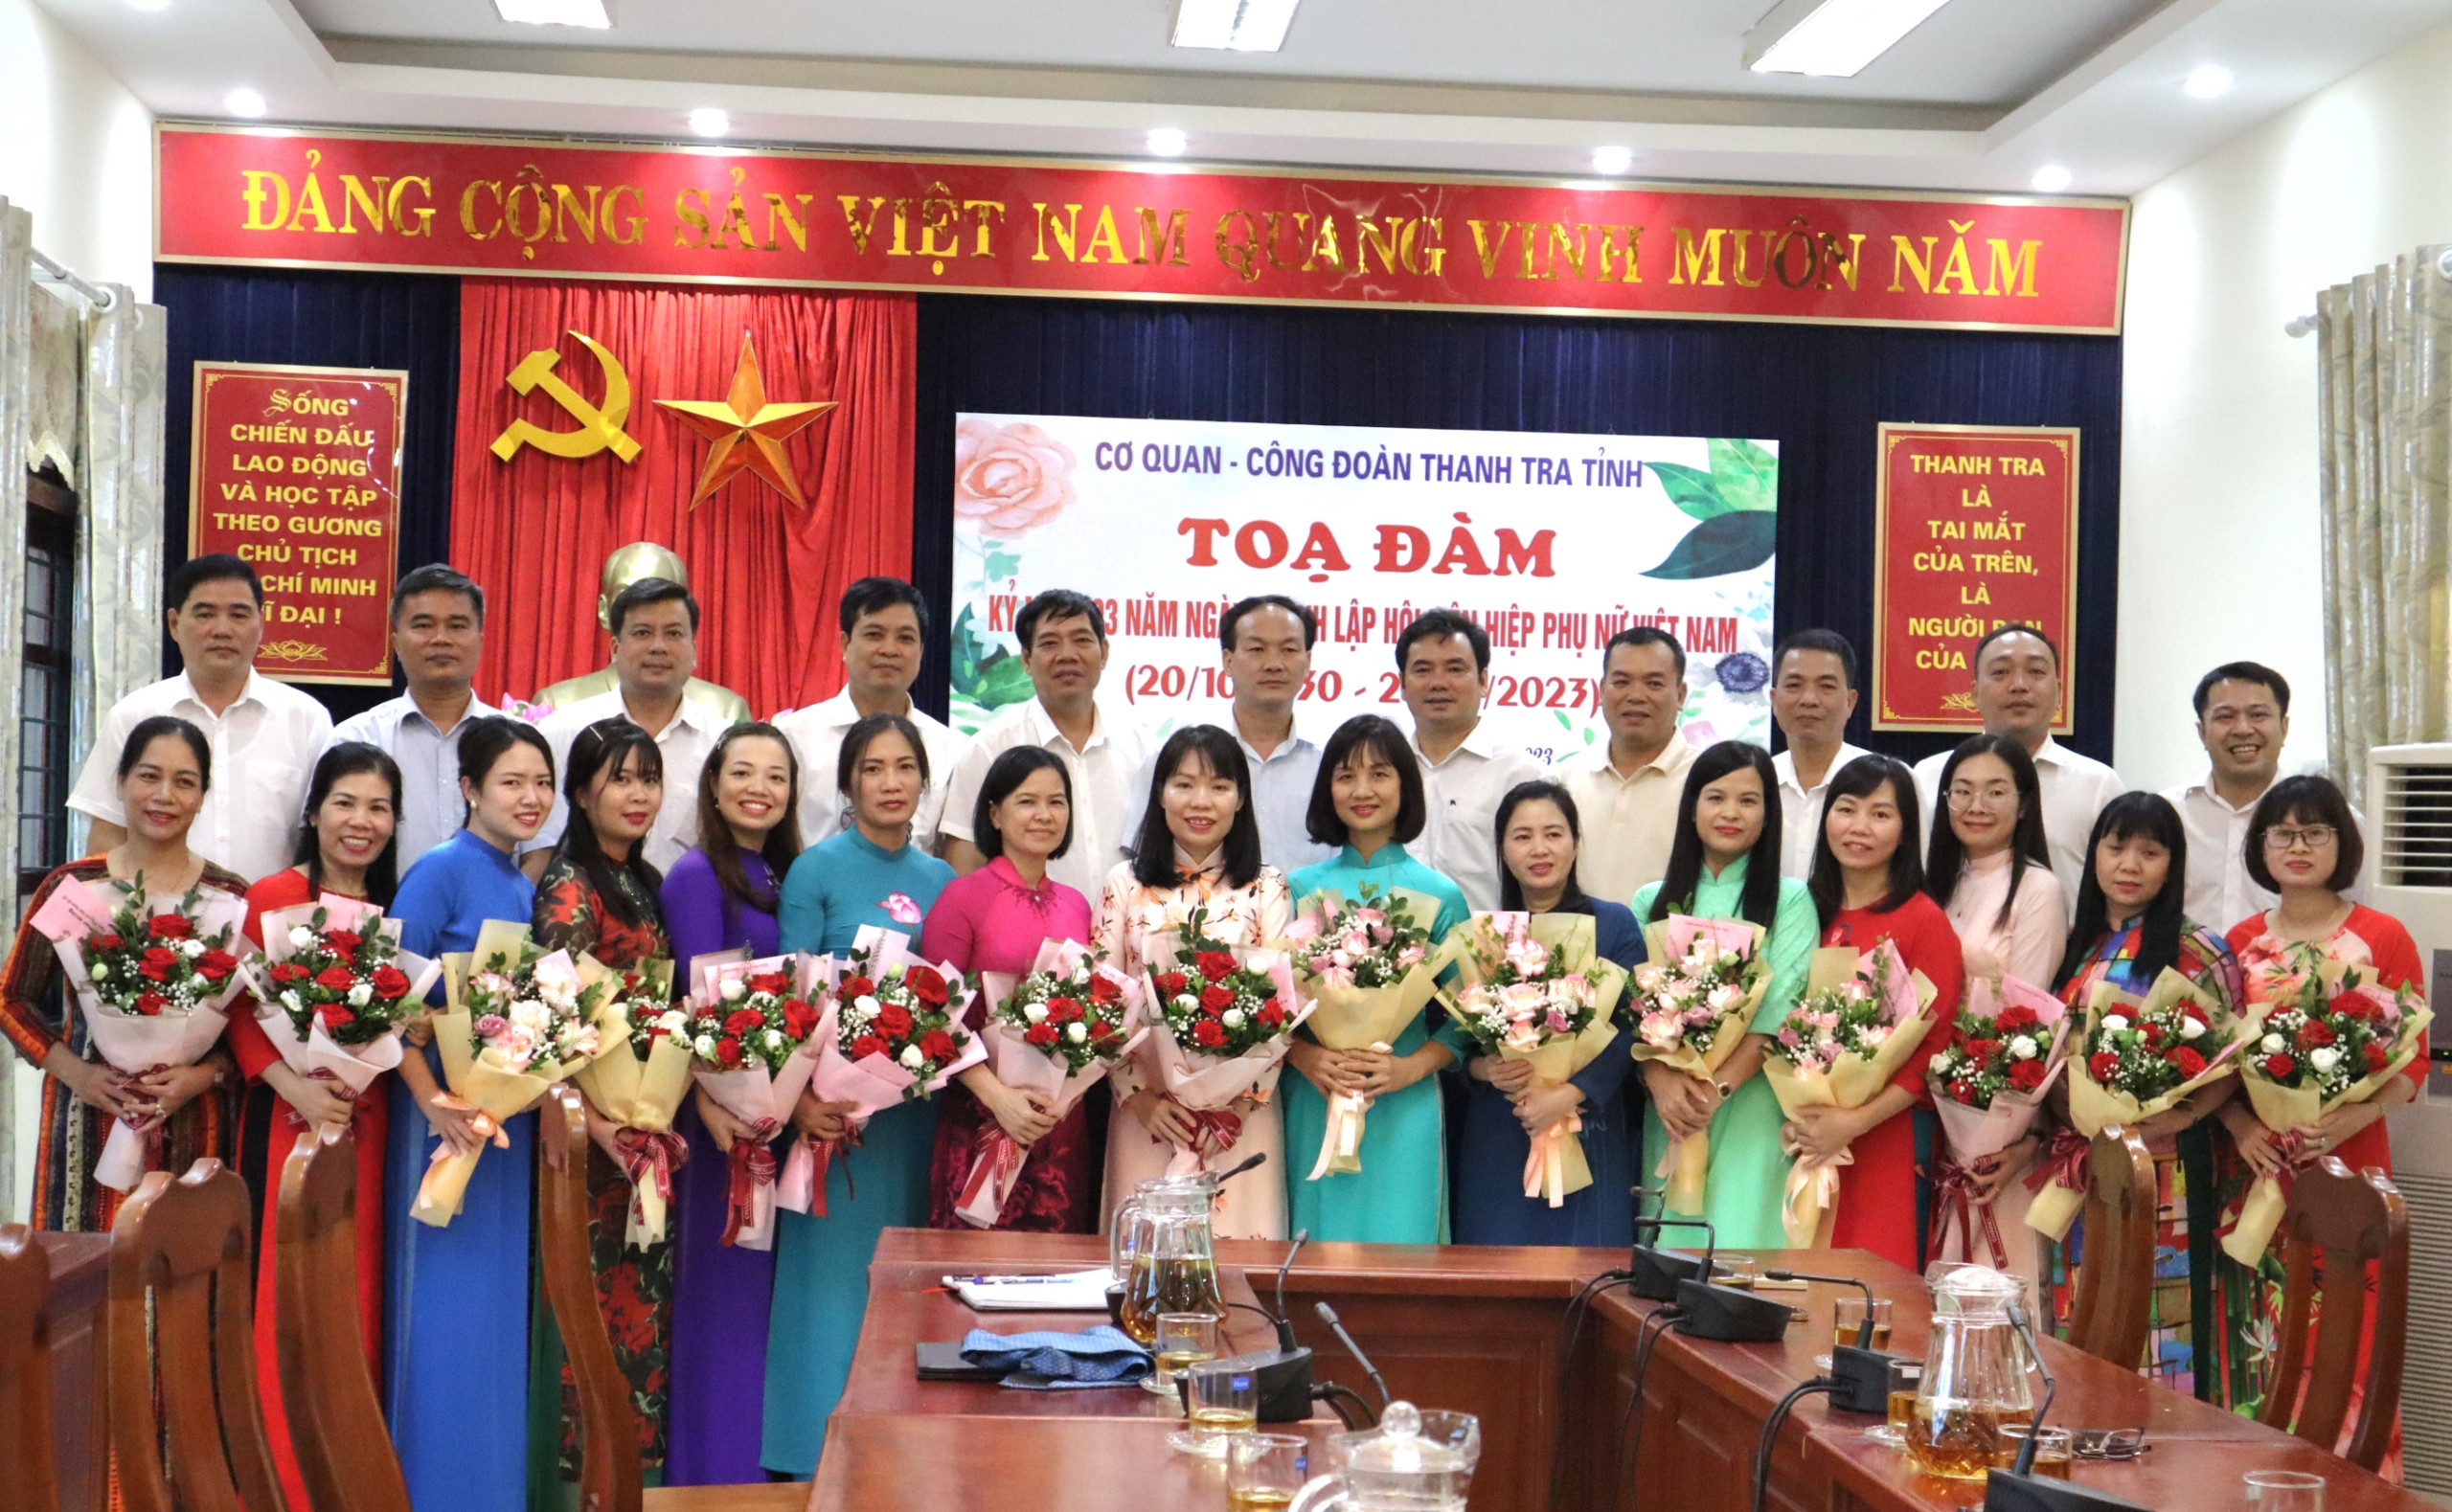 Cơ quan, Công đoàn Thanh tra tỉnh Tuyên Quang tổ chức Tọa đàm kỷ niệm 93 năm ngày thành lập Hội Liên hiệp Phụ nữ Việt Nam 20/10/1930 - 20/10/2023